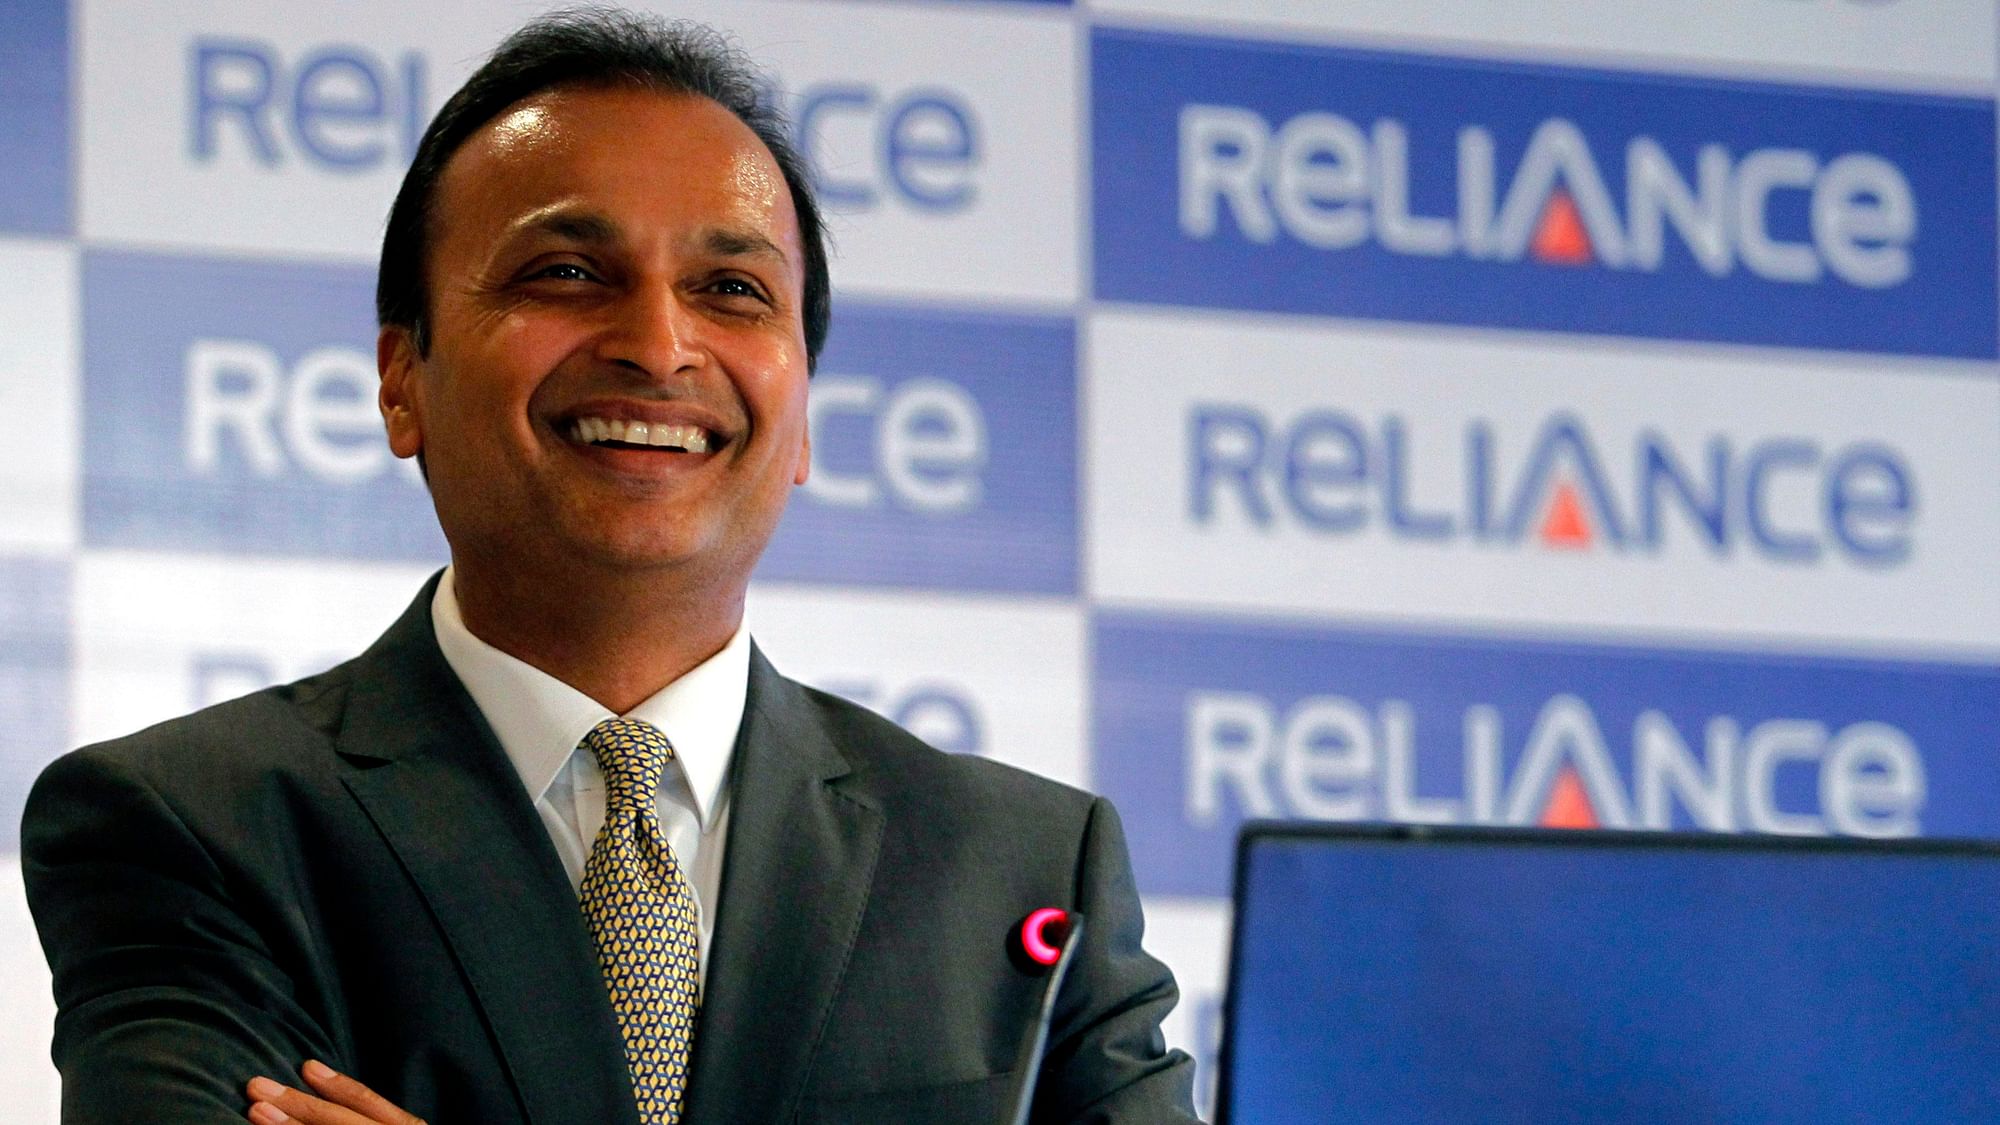 Chairman of Reliance Communications, Anil Ambani